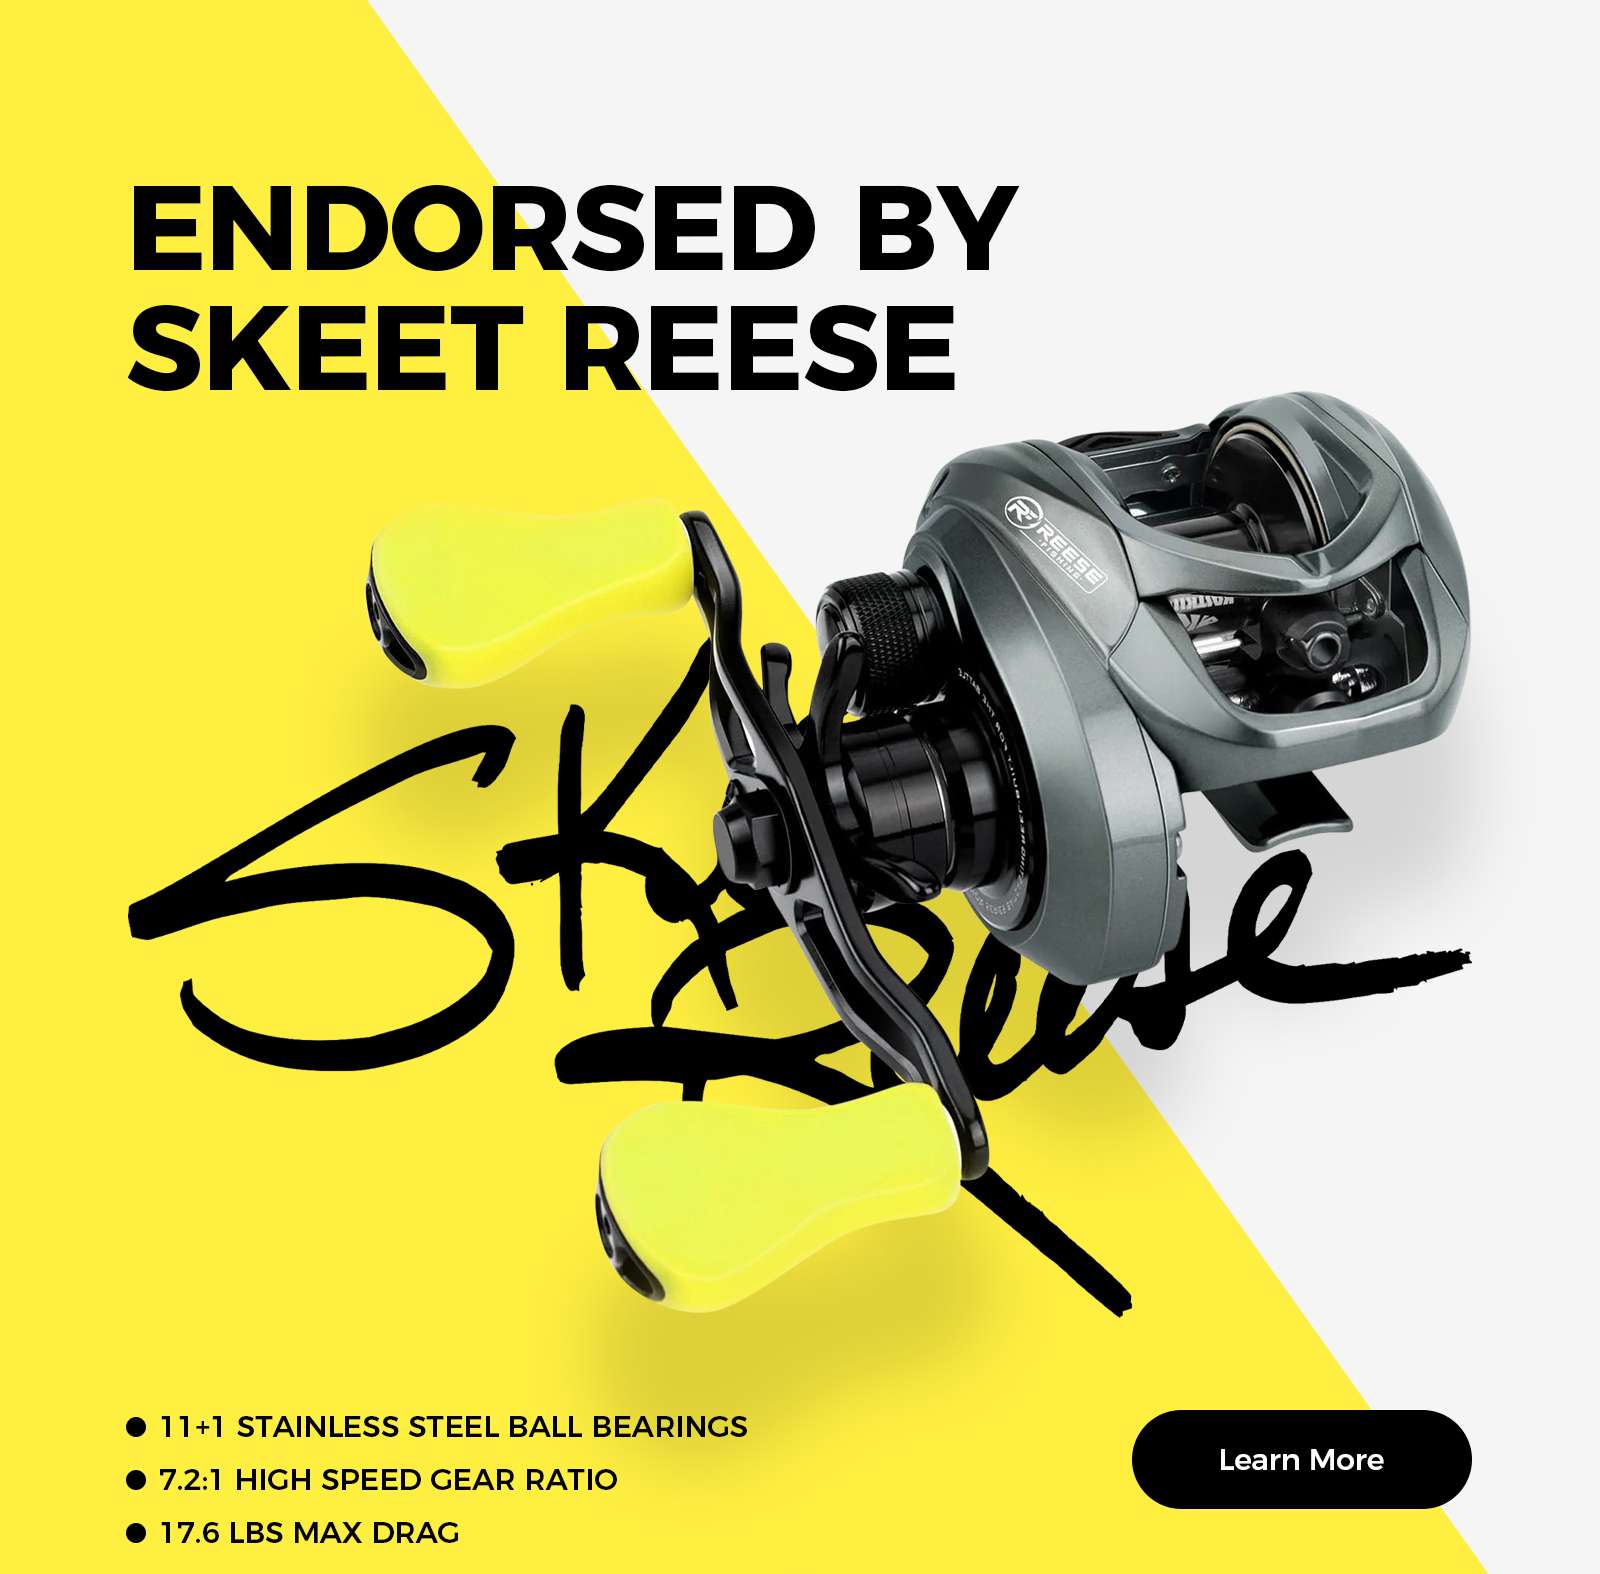 Endorsed by Skeet Reese: KastKing Skeet Reese Icon Baitcasting